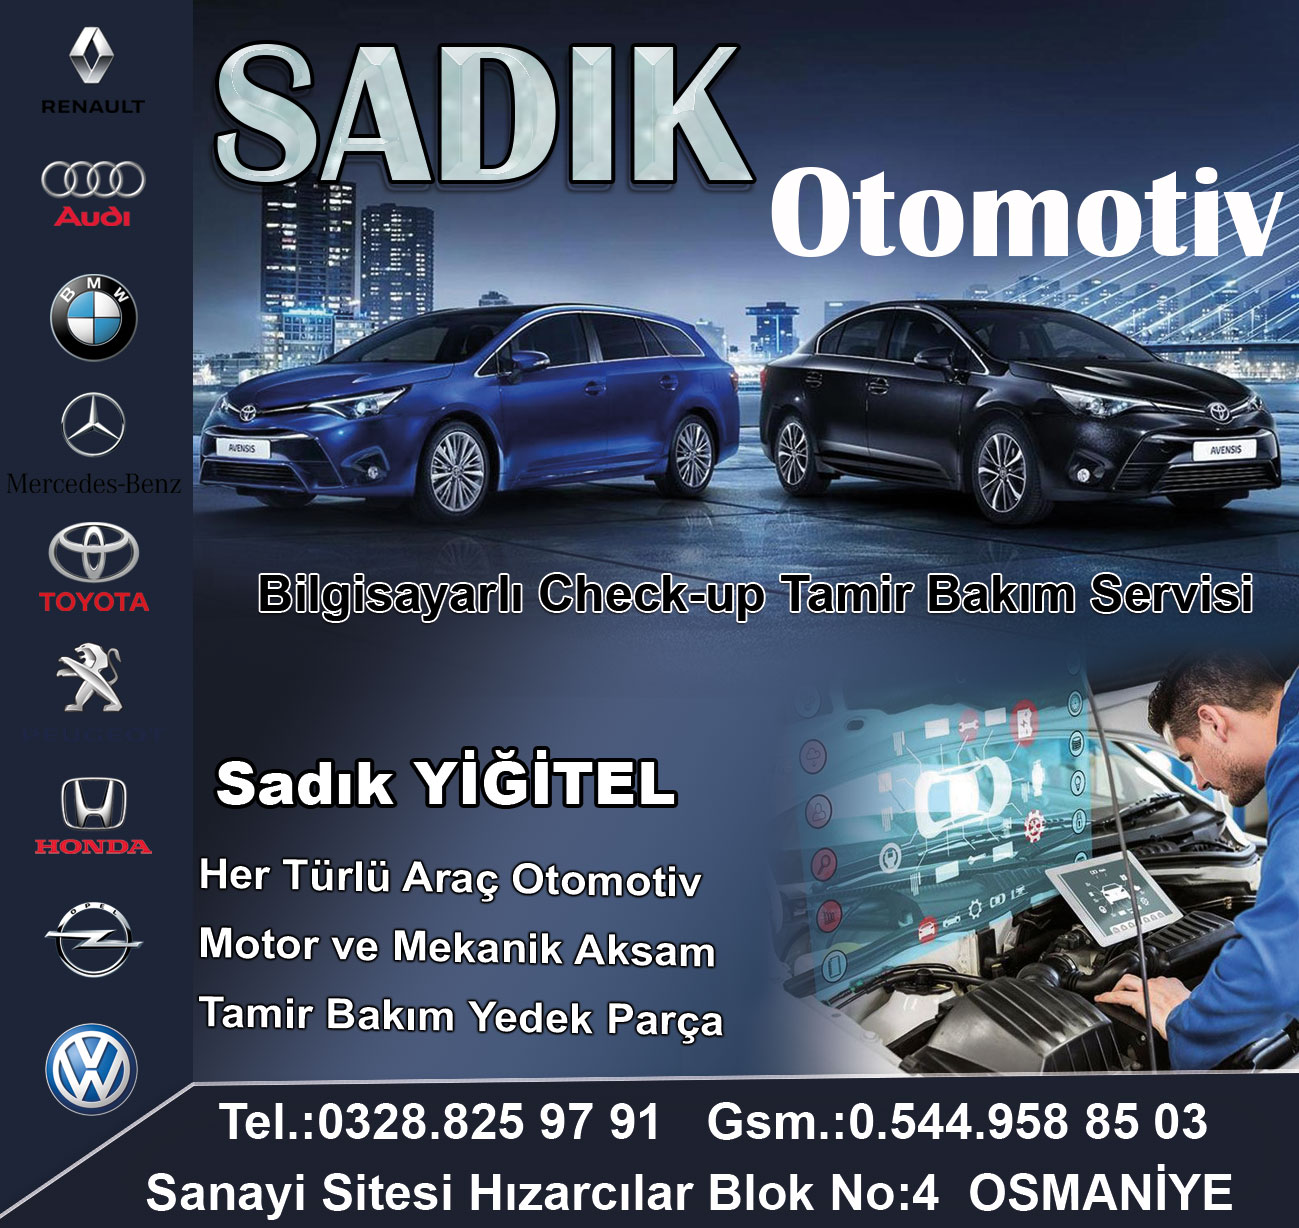 sadik-otomotiv-osmaniye